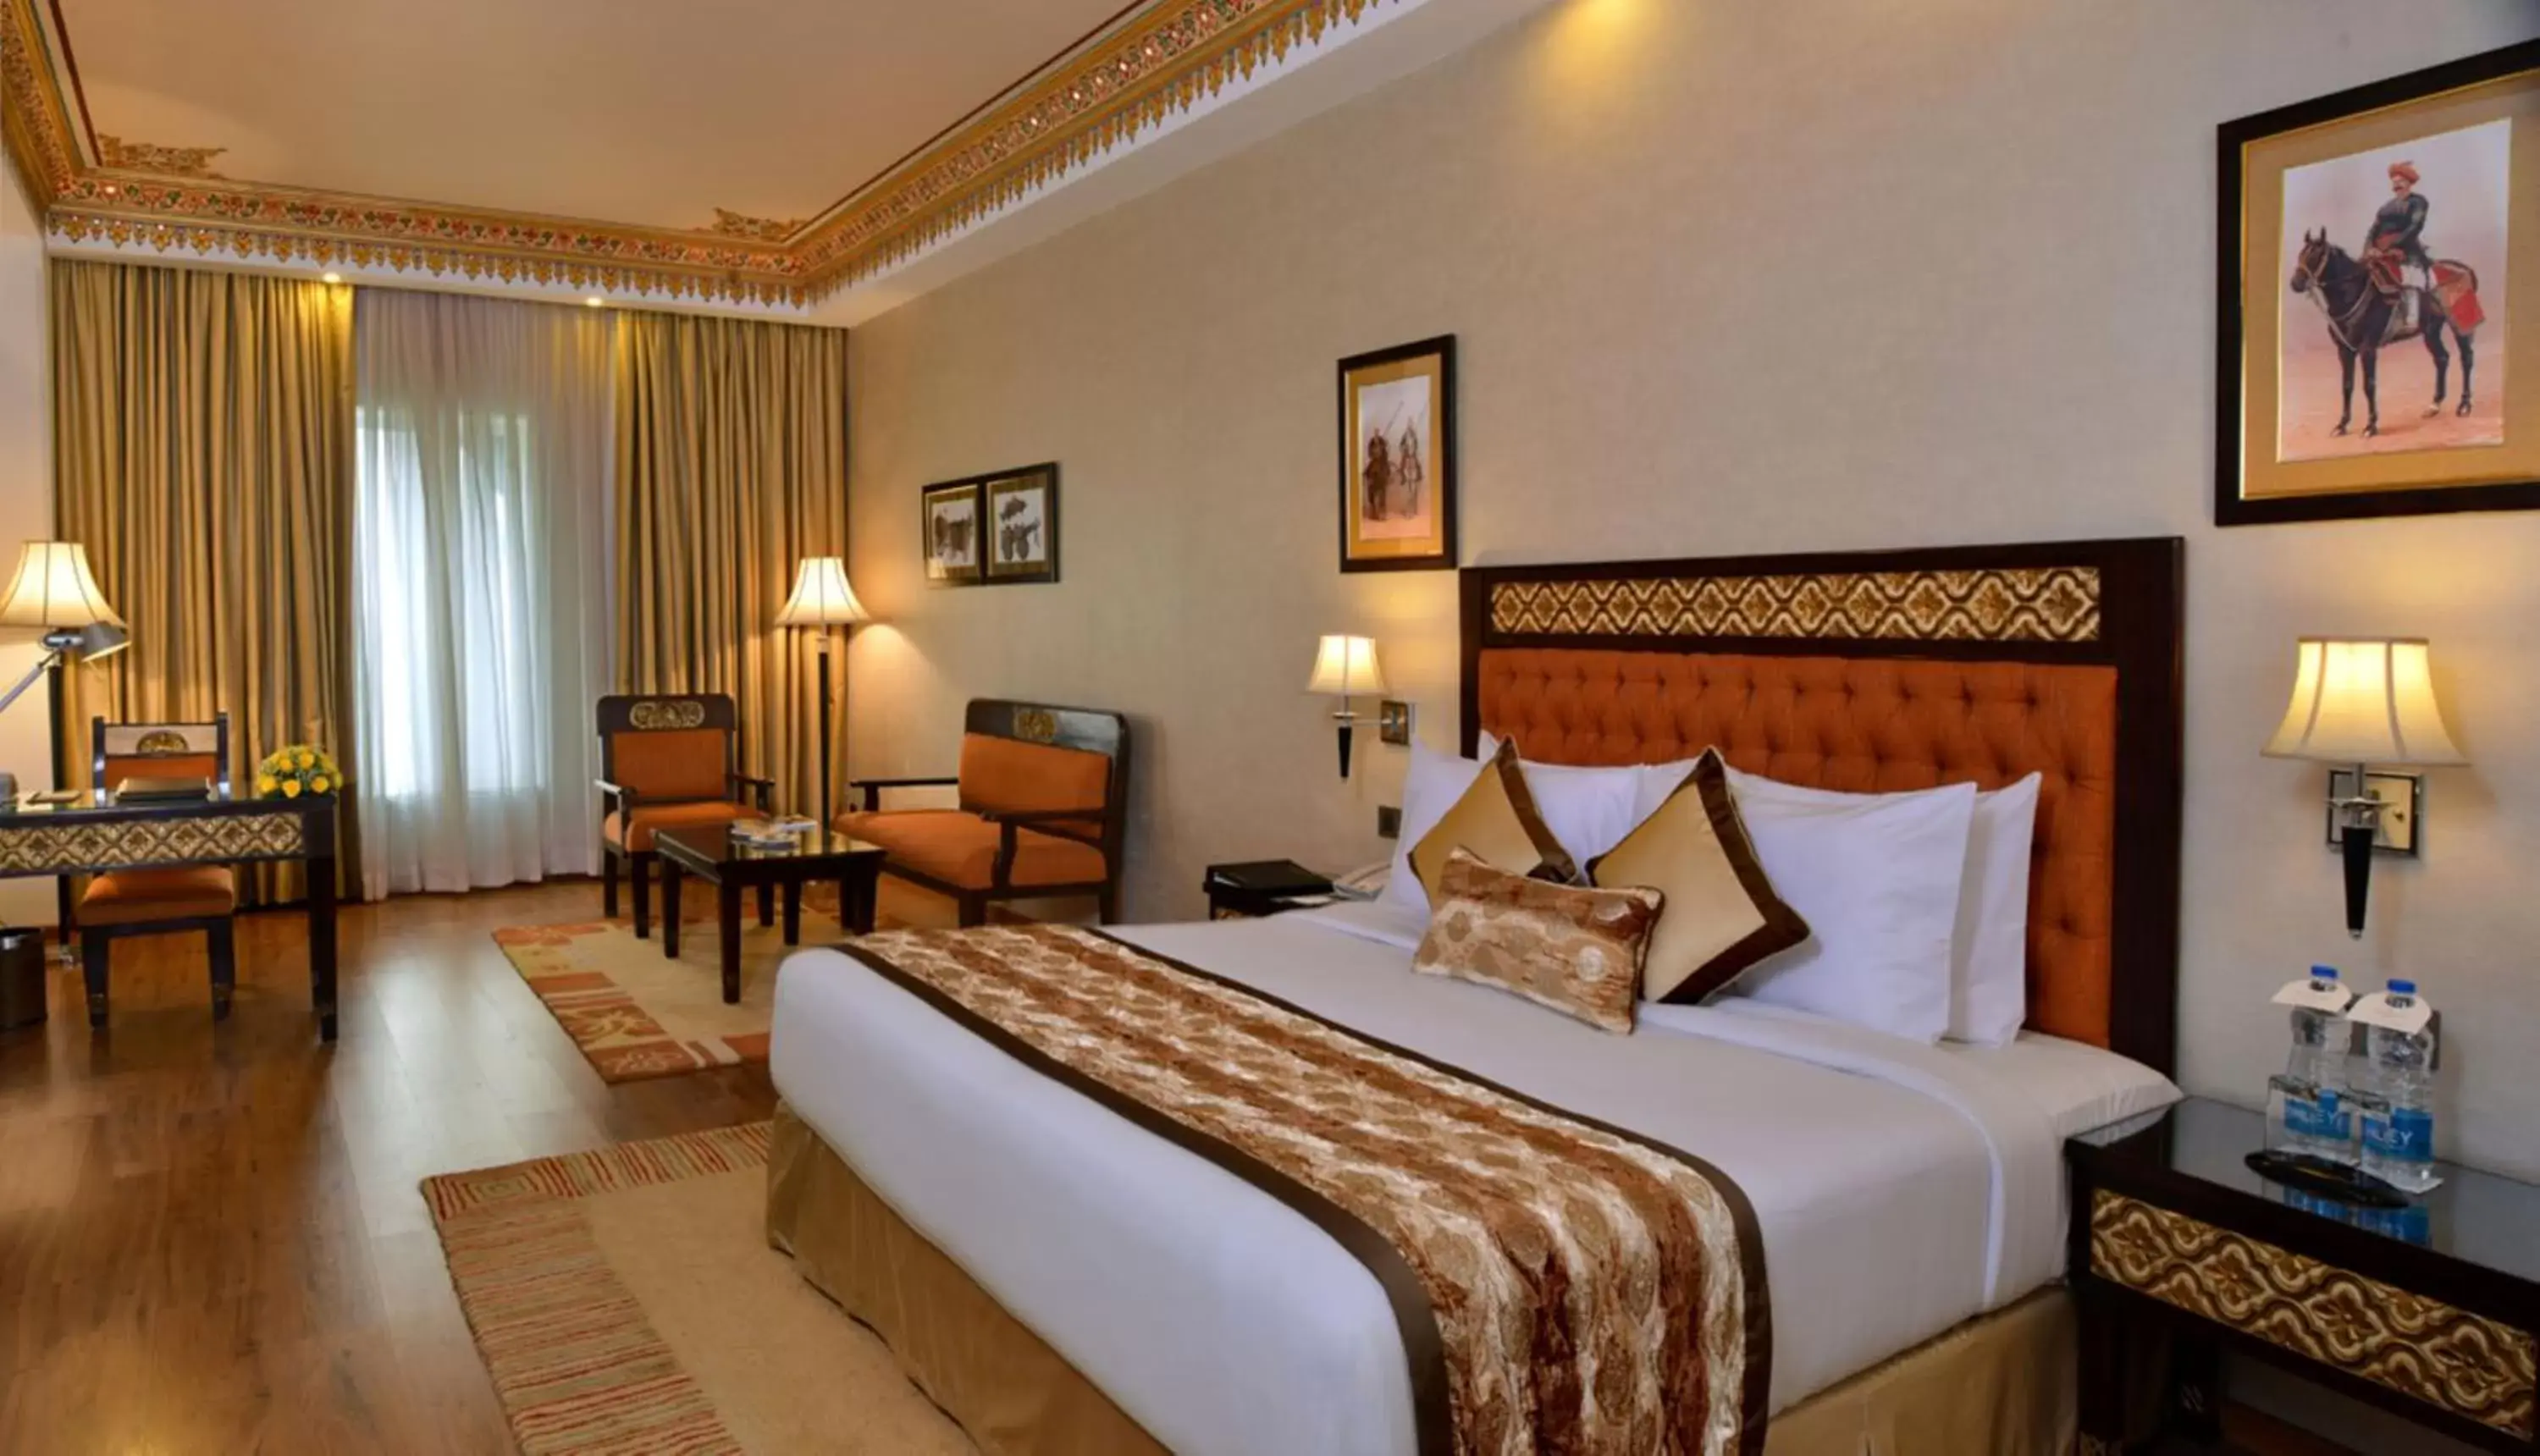 Bedroom, Bed in Noormahal Palace Hotel